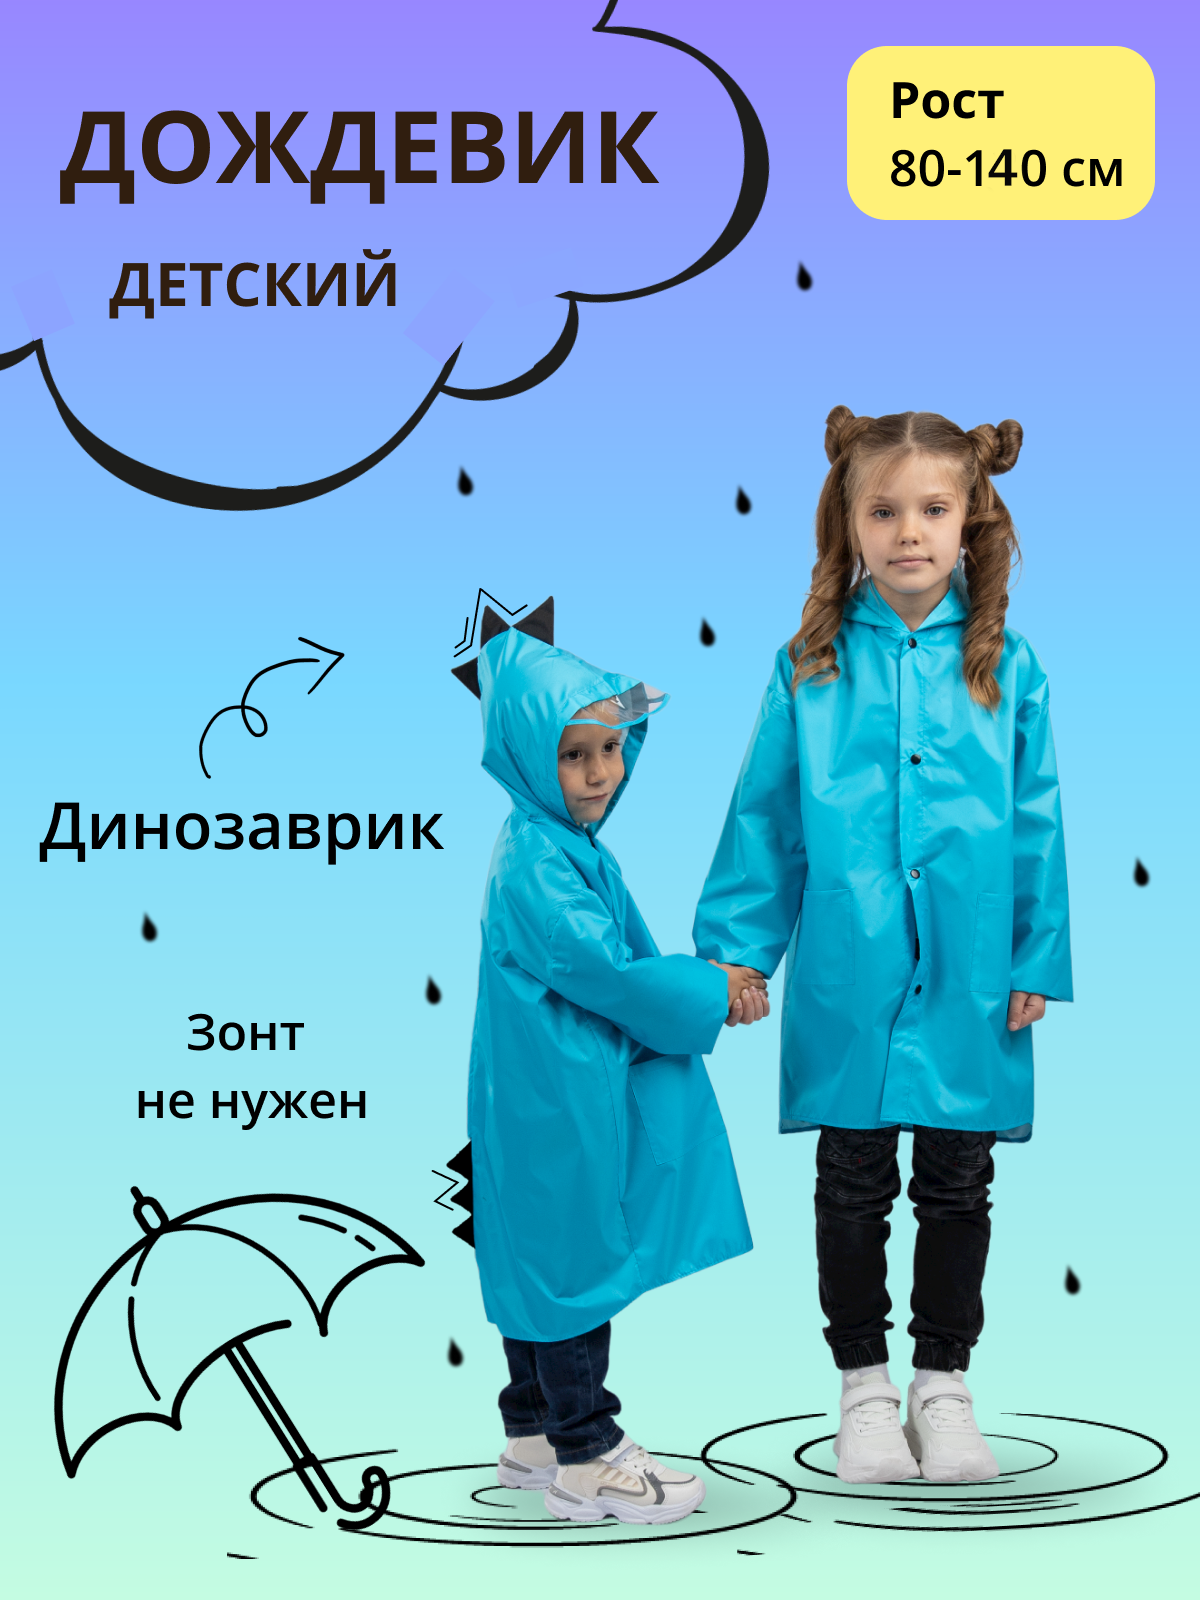 Дождевик детский Под дождем 122905588, голубой, 92